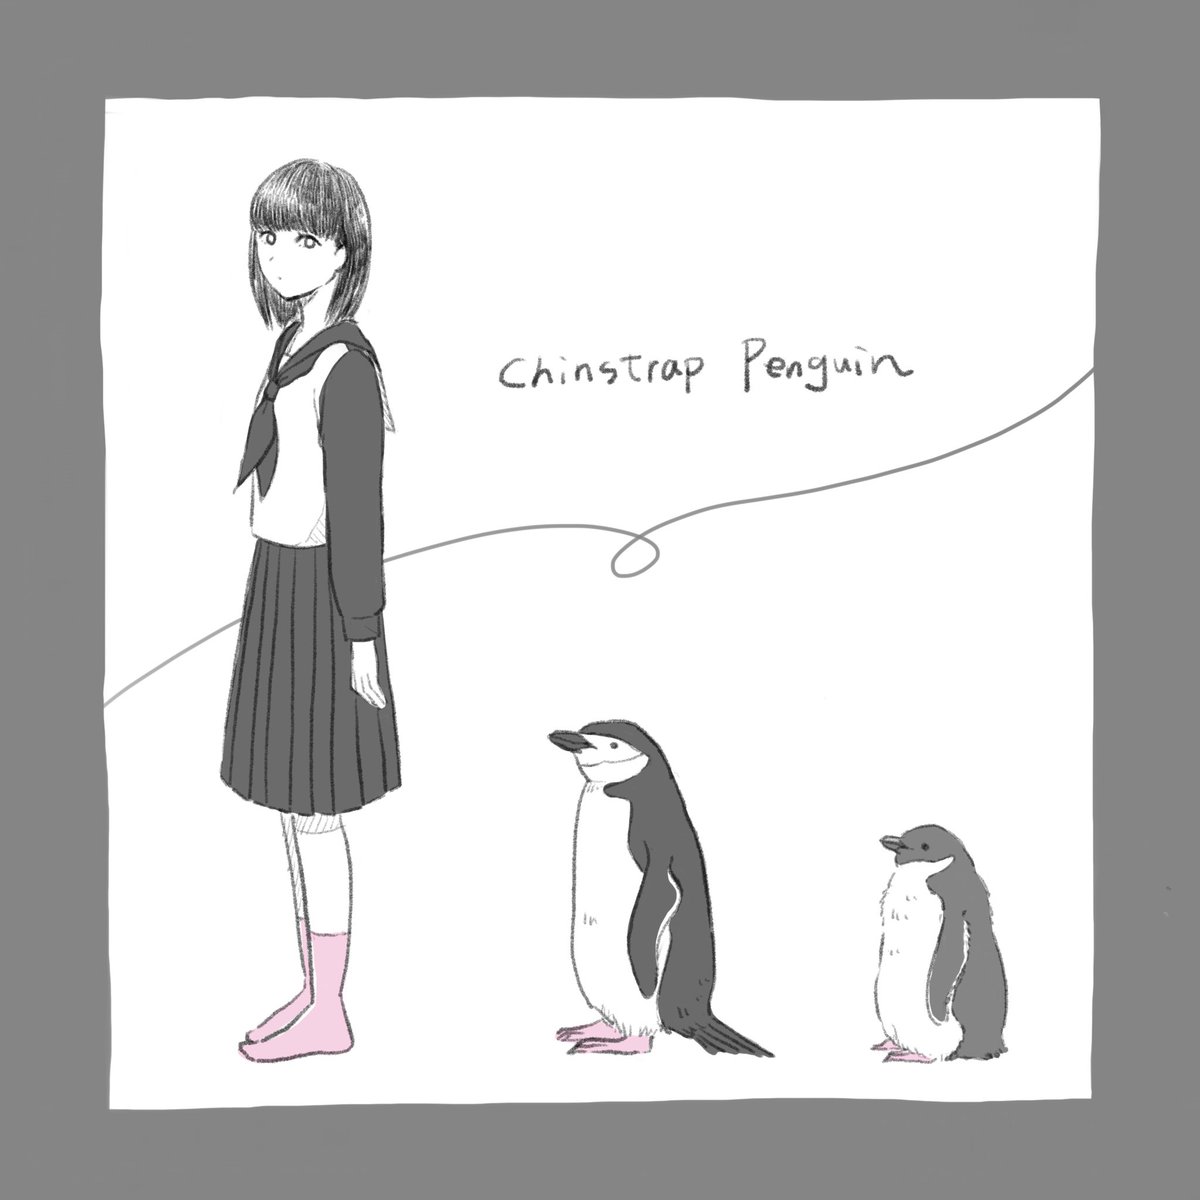 ヒゲペンギンと女の子
#ヒゲペンギン #ペンギン 